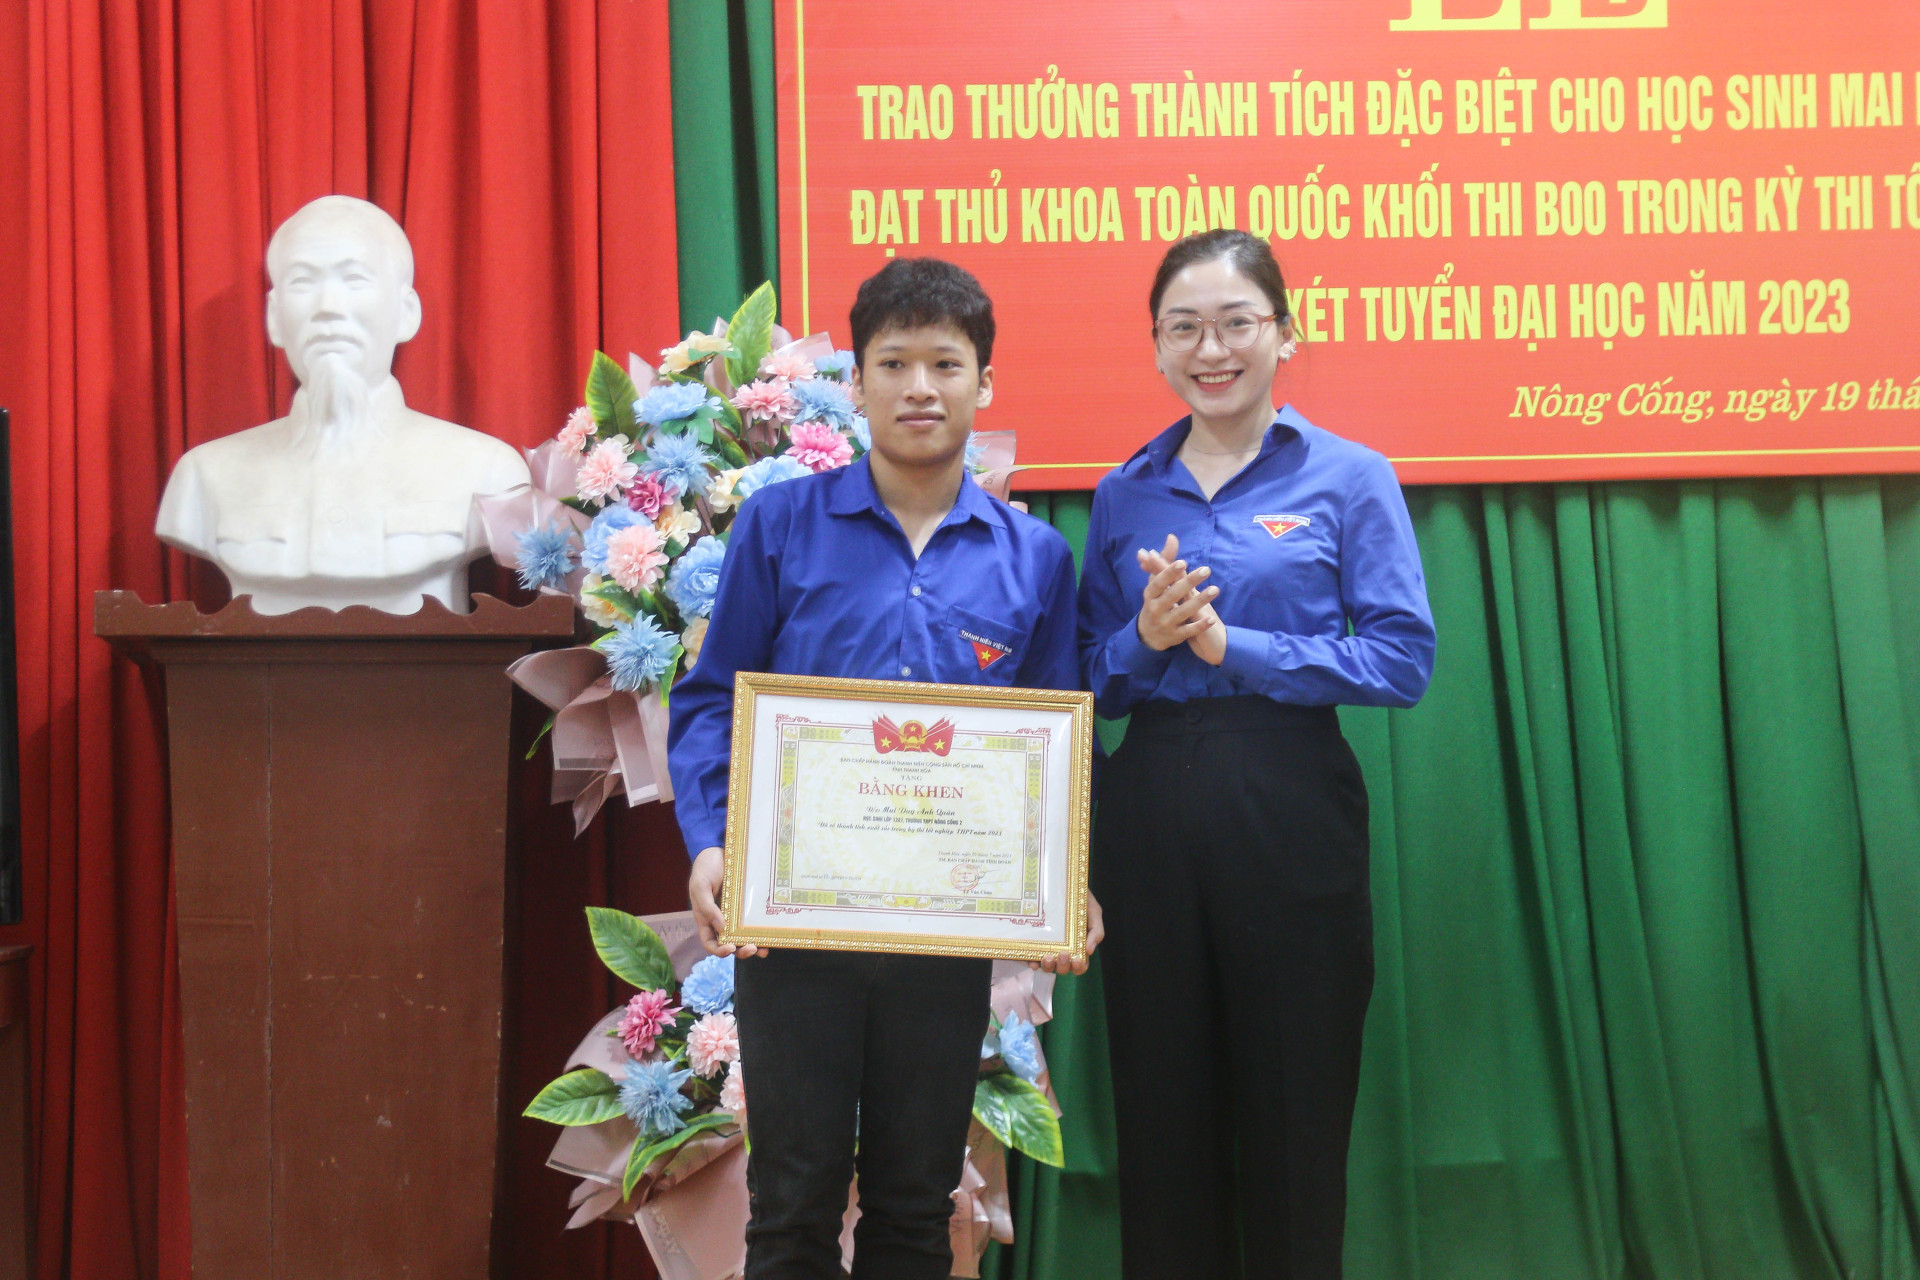 Đồng chí Phùng Tố Linh, Phó Bí thư Tỉnh đoàn trao bằng khen cho em Mai Duy Anh Quân, học sinh lớp 12A7 trường THPT Nông Cống 2